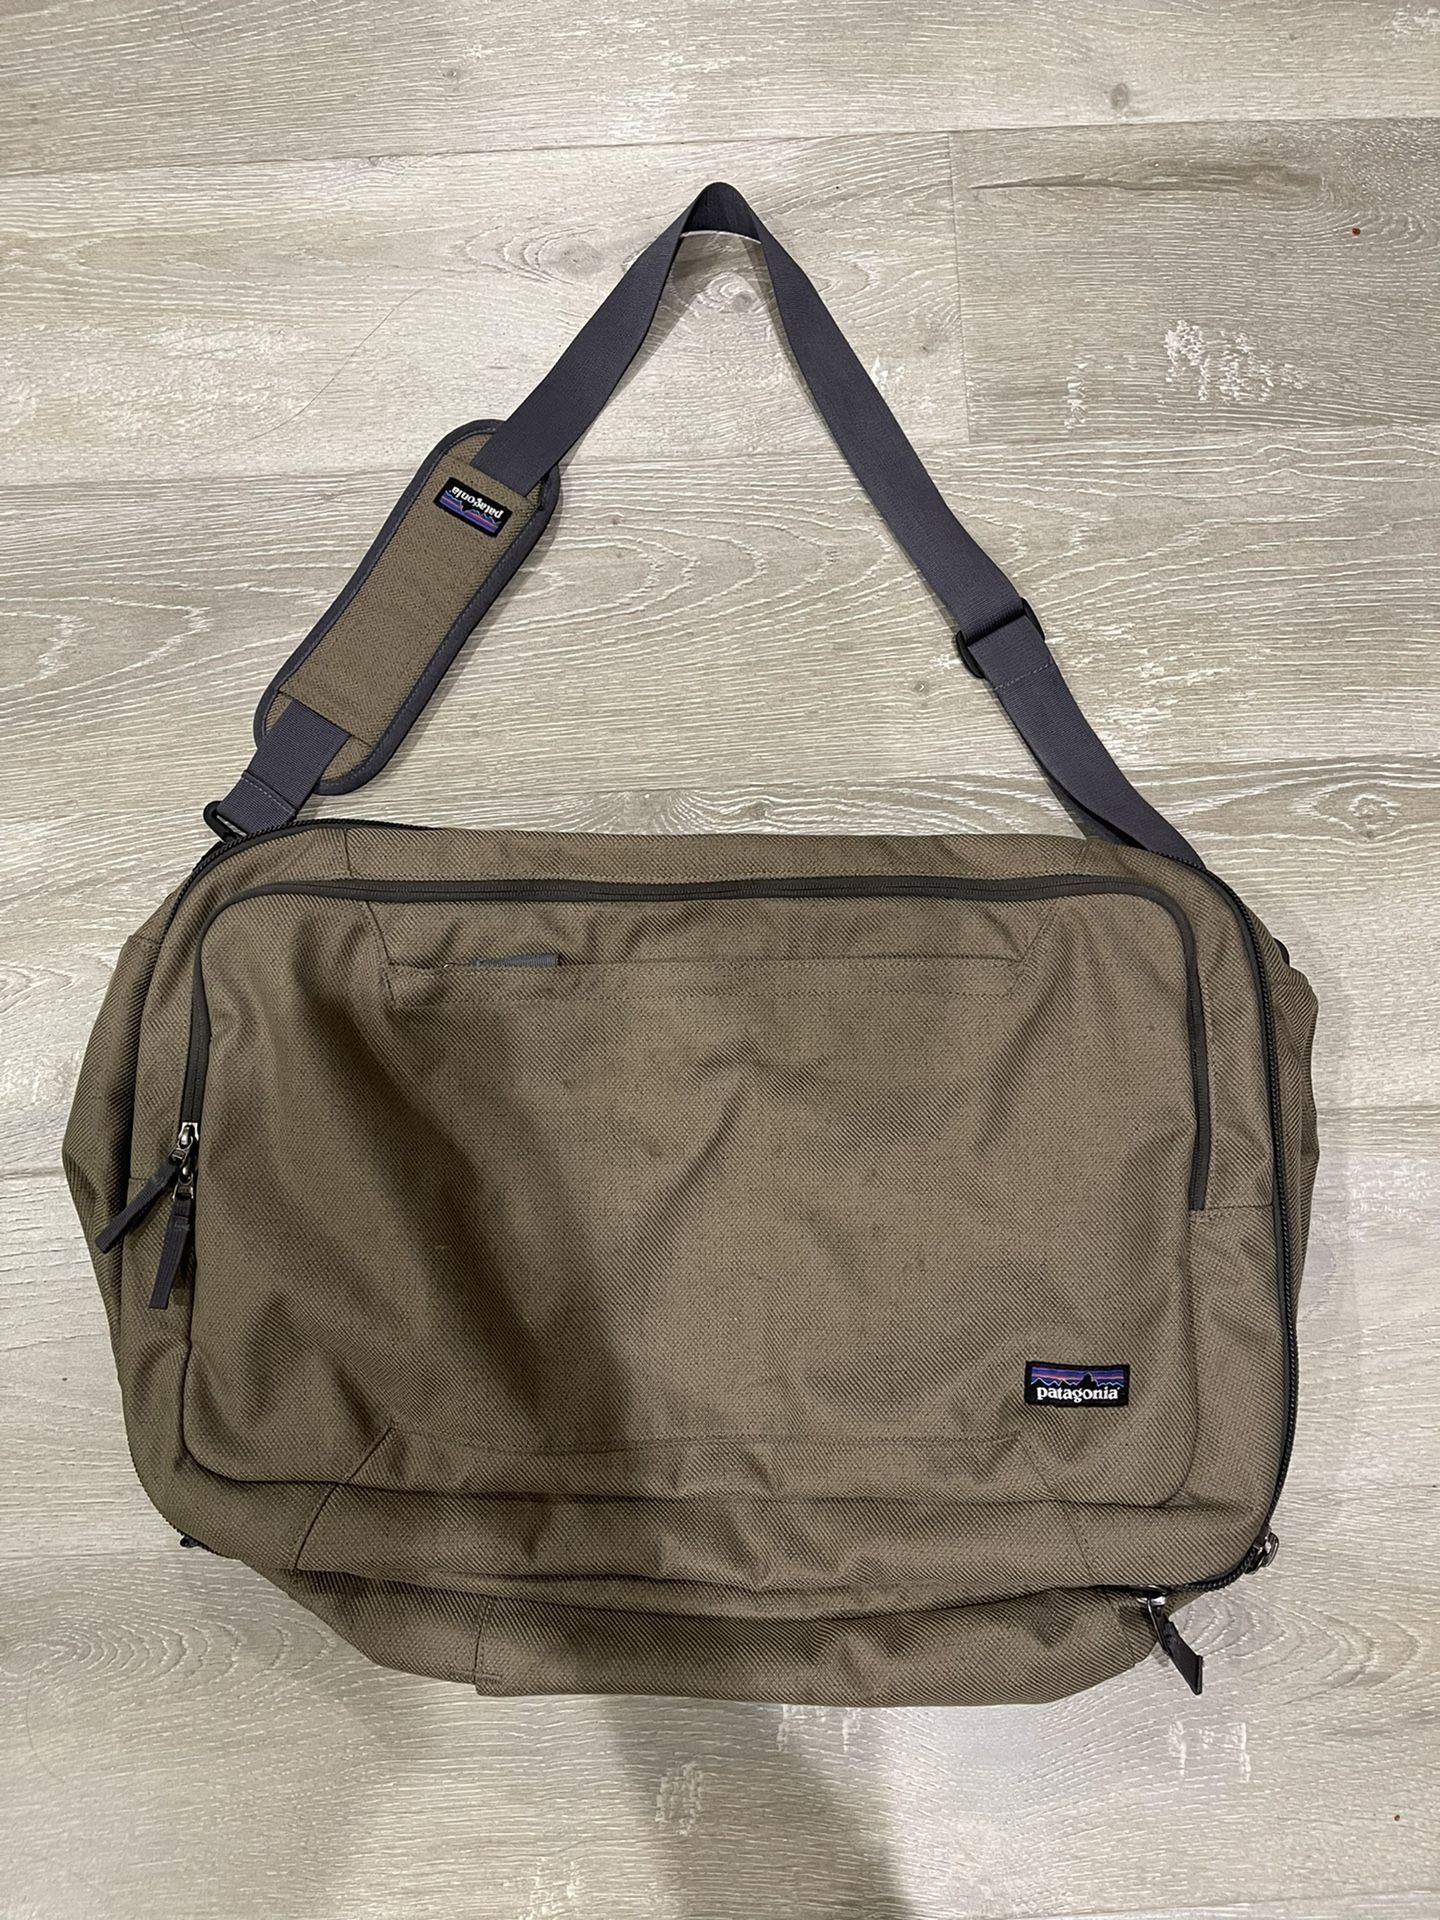 Patagonia Travel Bag - Duffel / Backpack